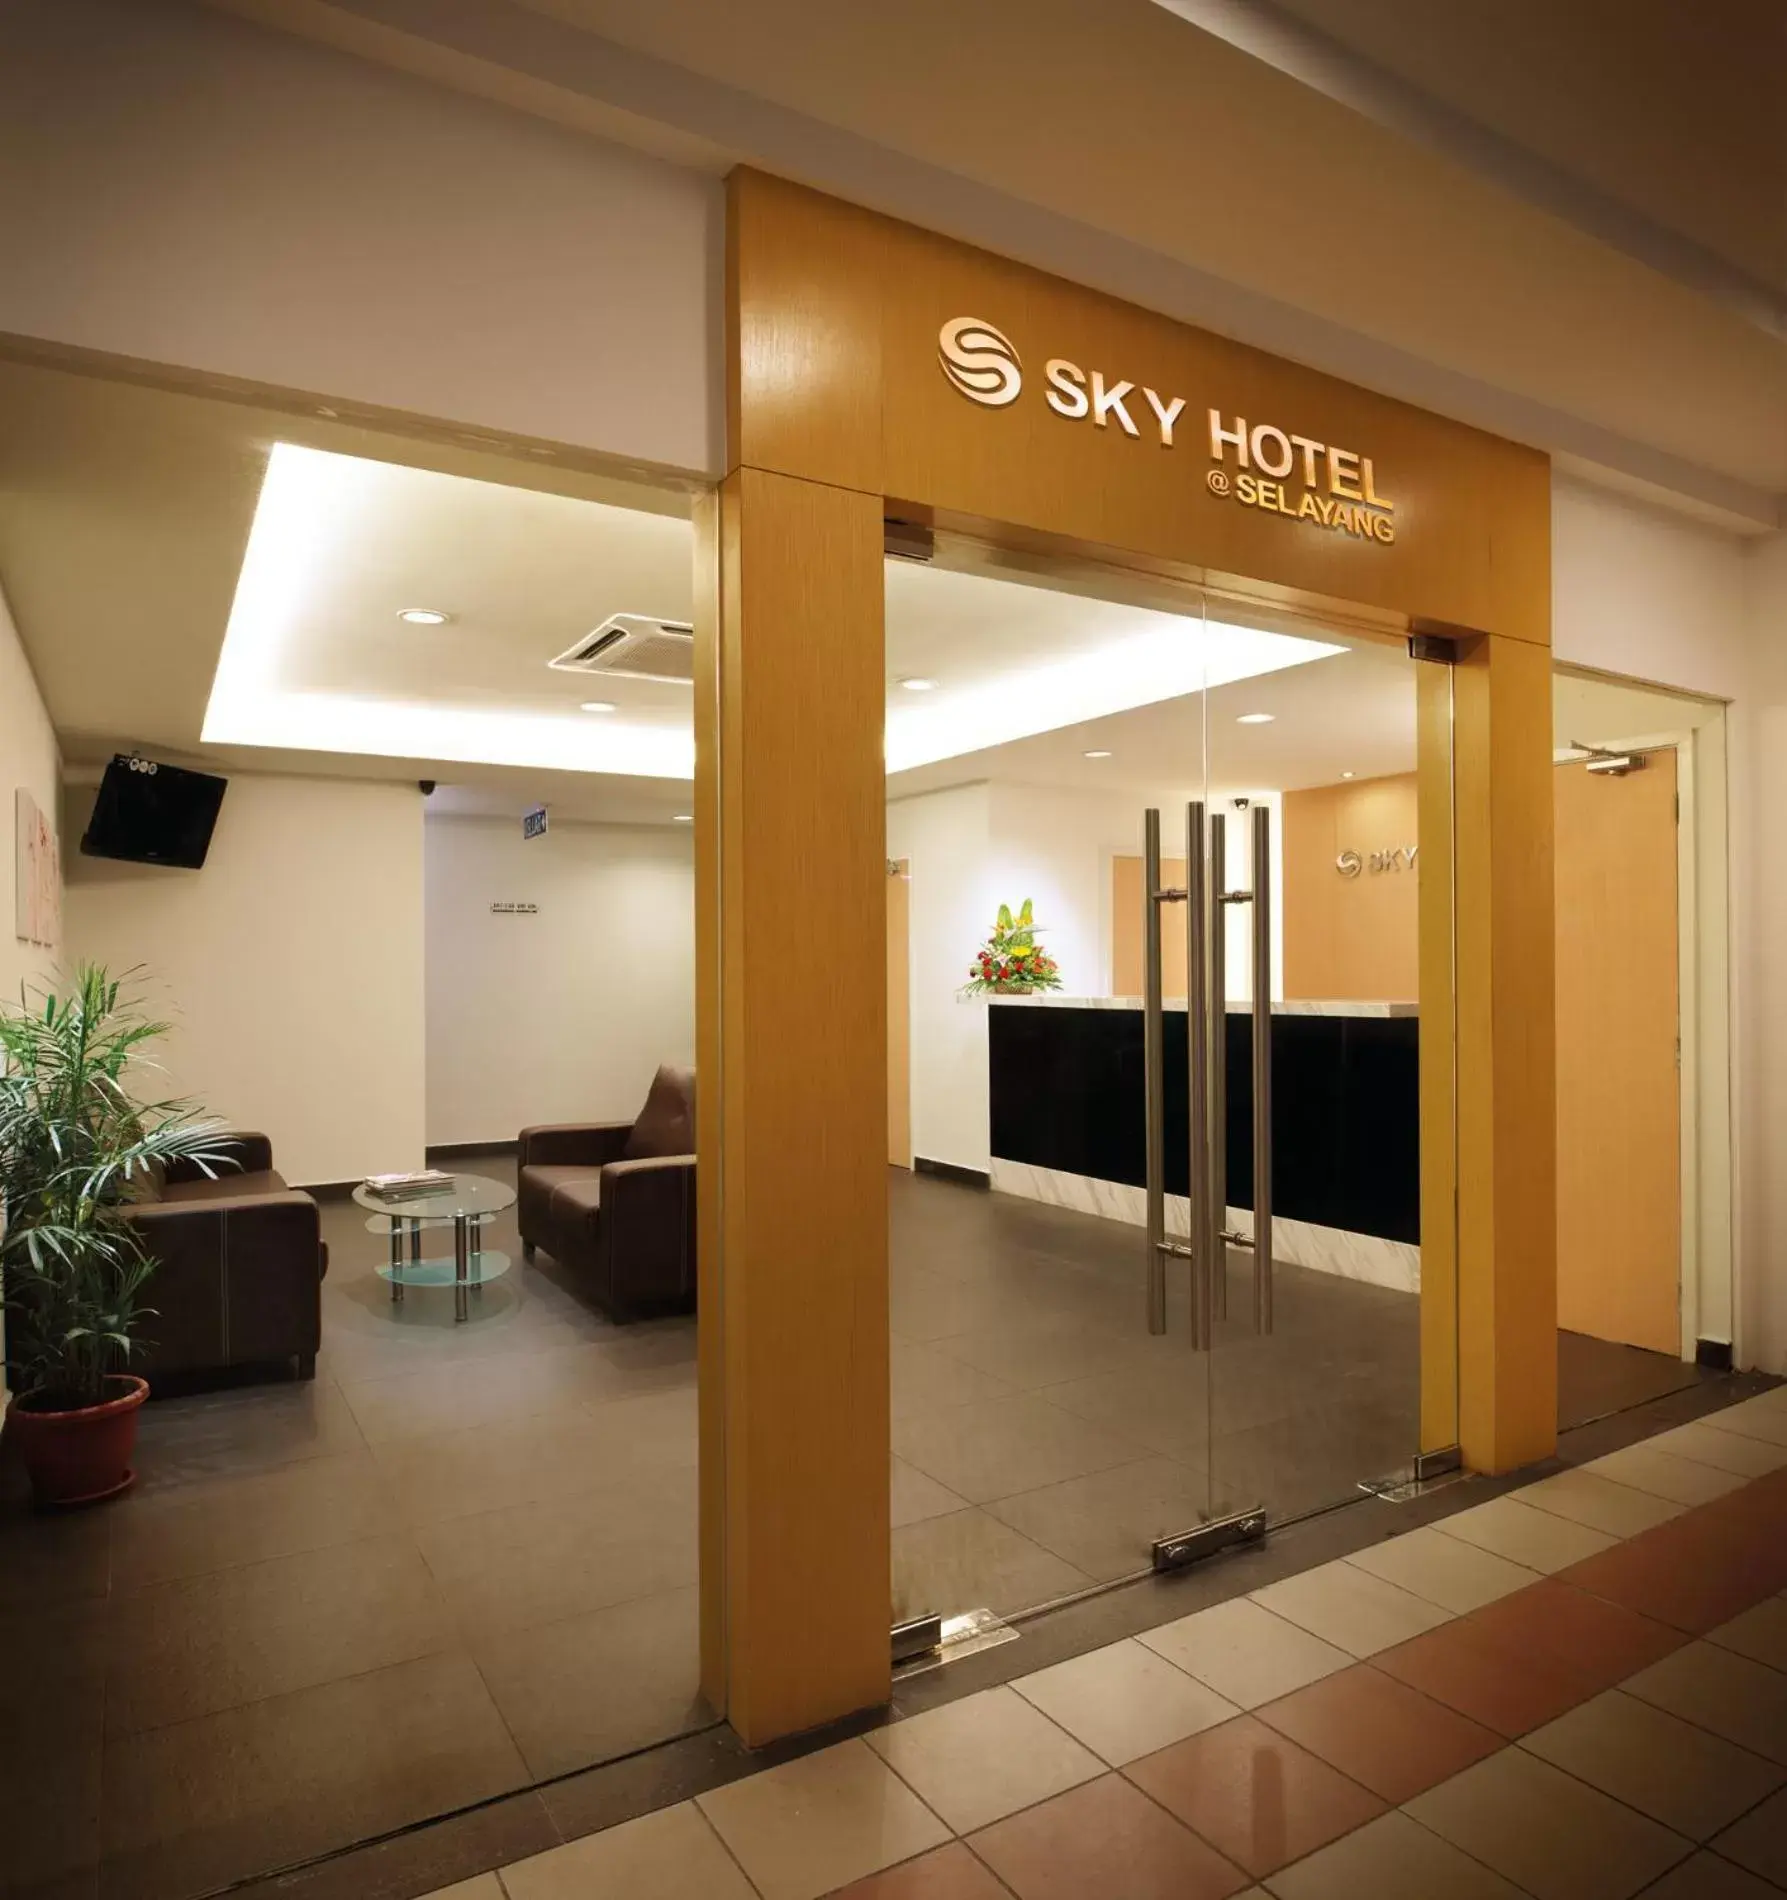 Facade/entrance in Sky Hotel @ Selayang